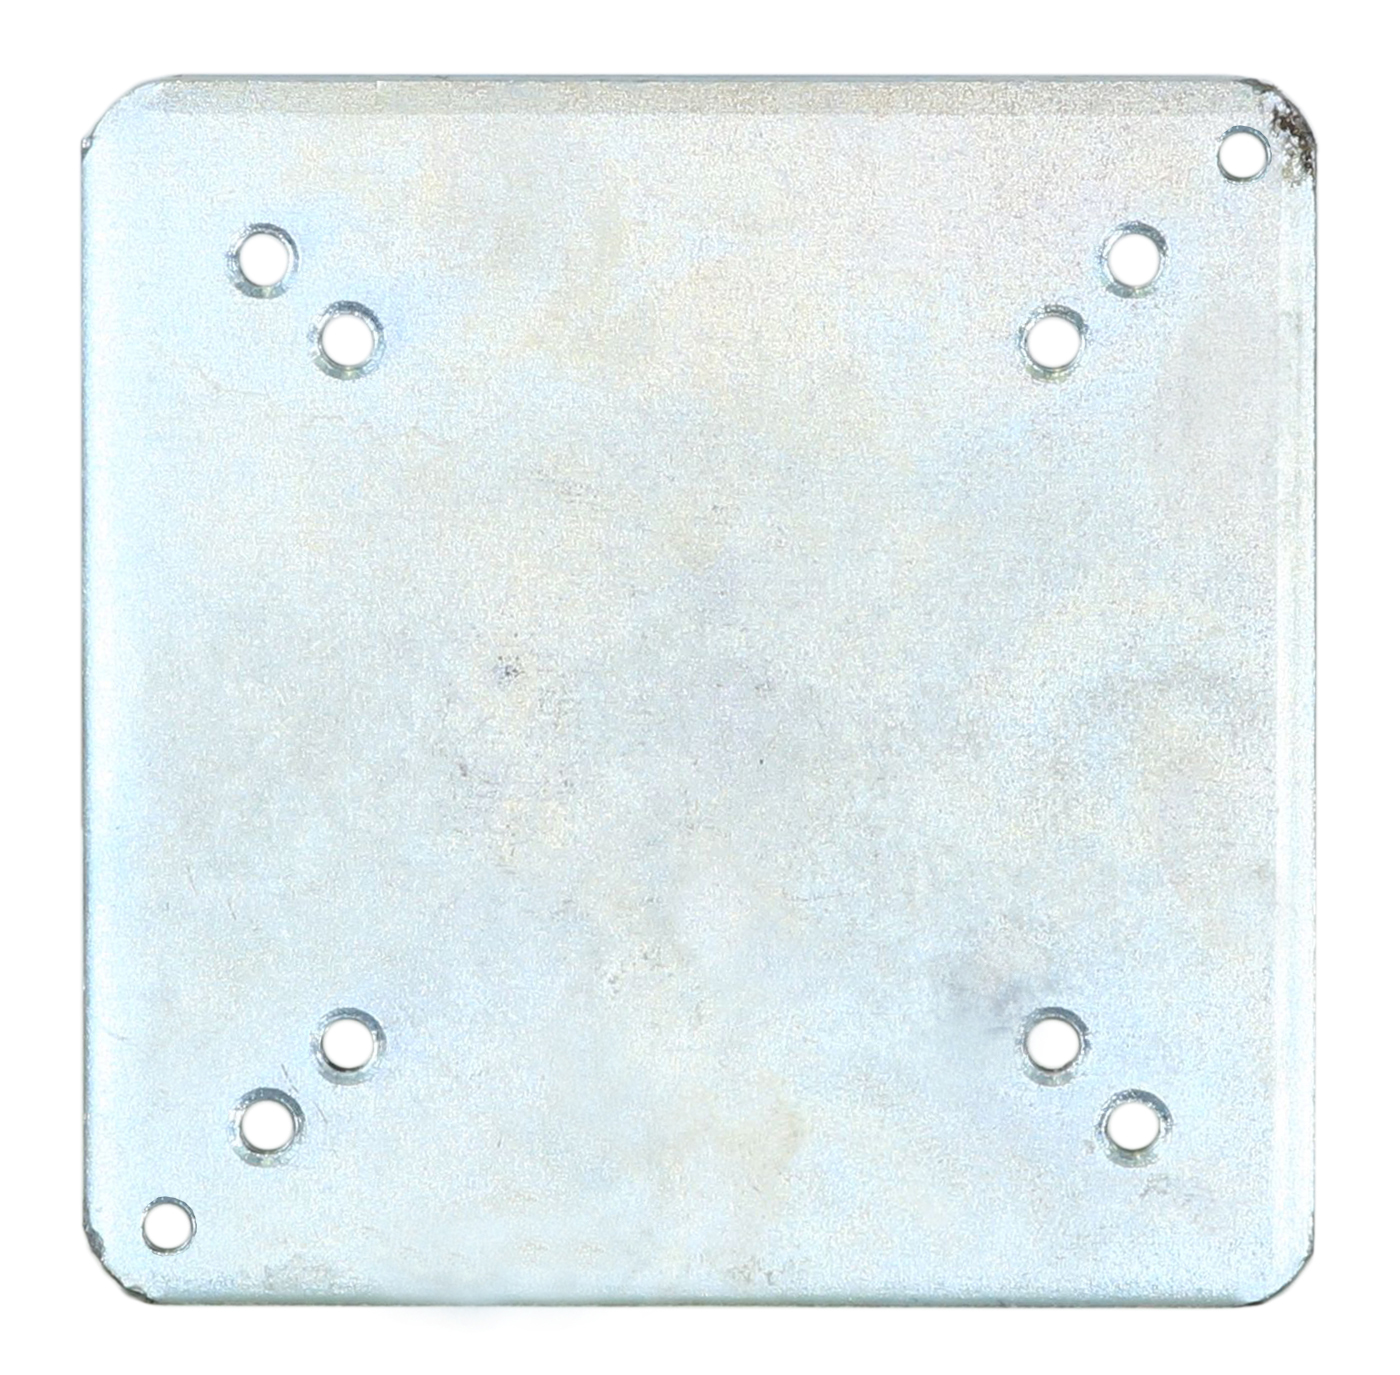  Schneider Universal-Bodenplatte für Ampelschirme, 897-00, zum  Einbetonieren, 3.8 kg, Silber